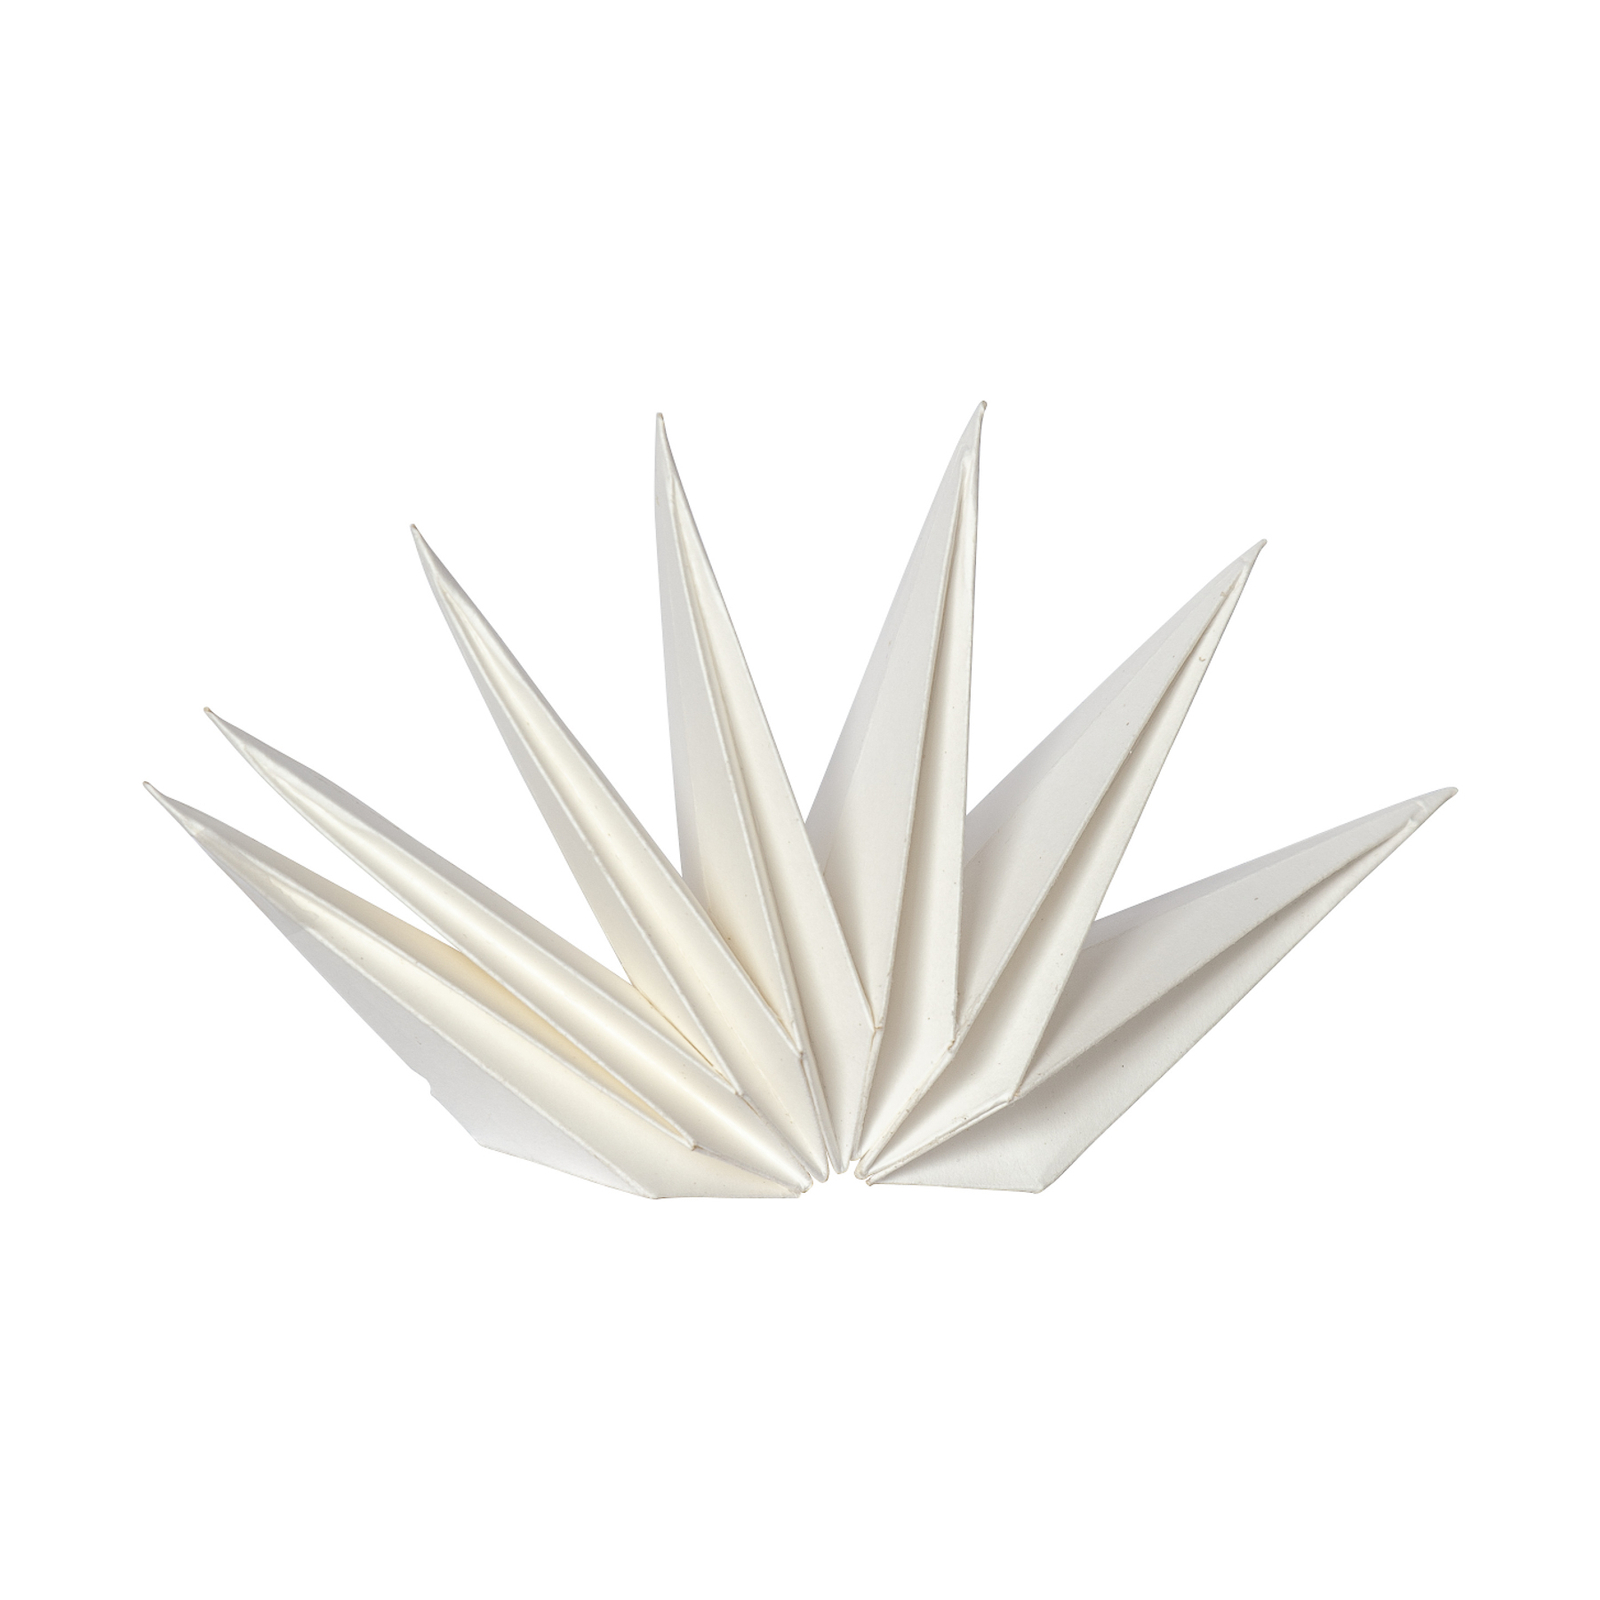 Facsúcs-papírcsillag Isa fehér fémspirállal